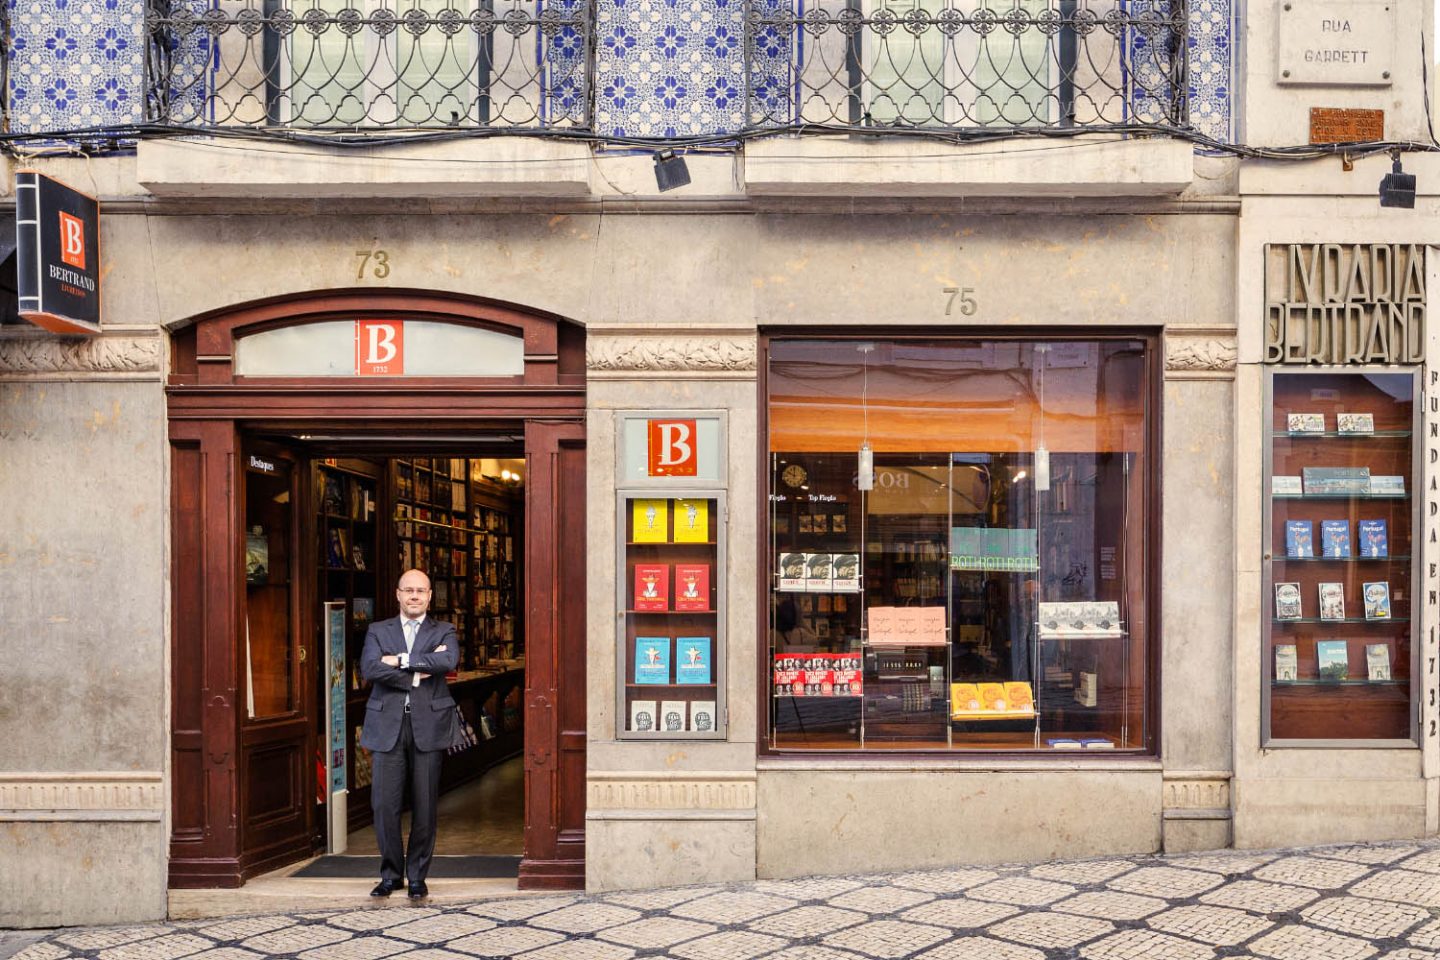 Αυτό είναι το παλαιότερο βιβλιοπωλείο του κόσμου- Άνοιξε για πρώτη φορά τις πόρτες του τον 18ο αιώναΠηγή φωτογραφίας: https://www.cityguidelisbon.com/